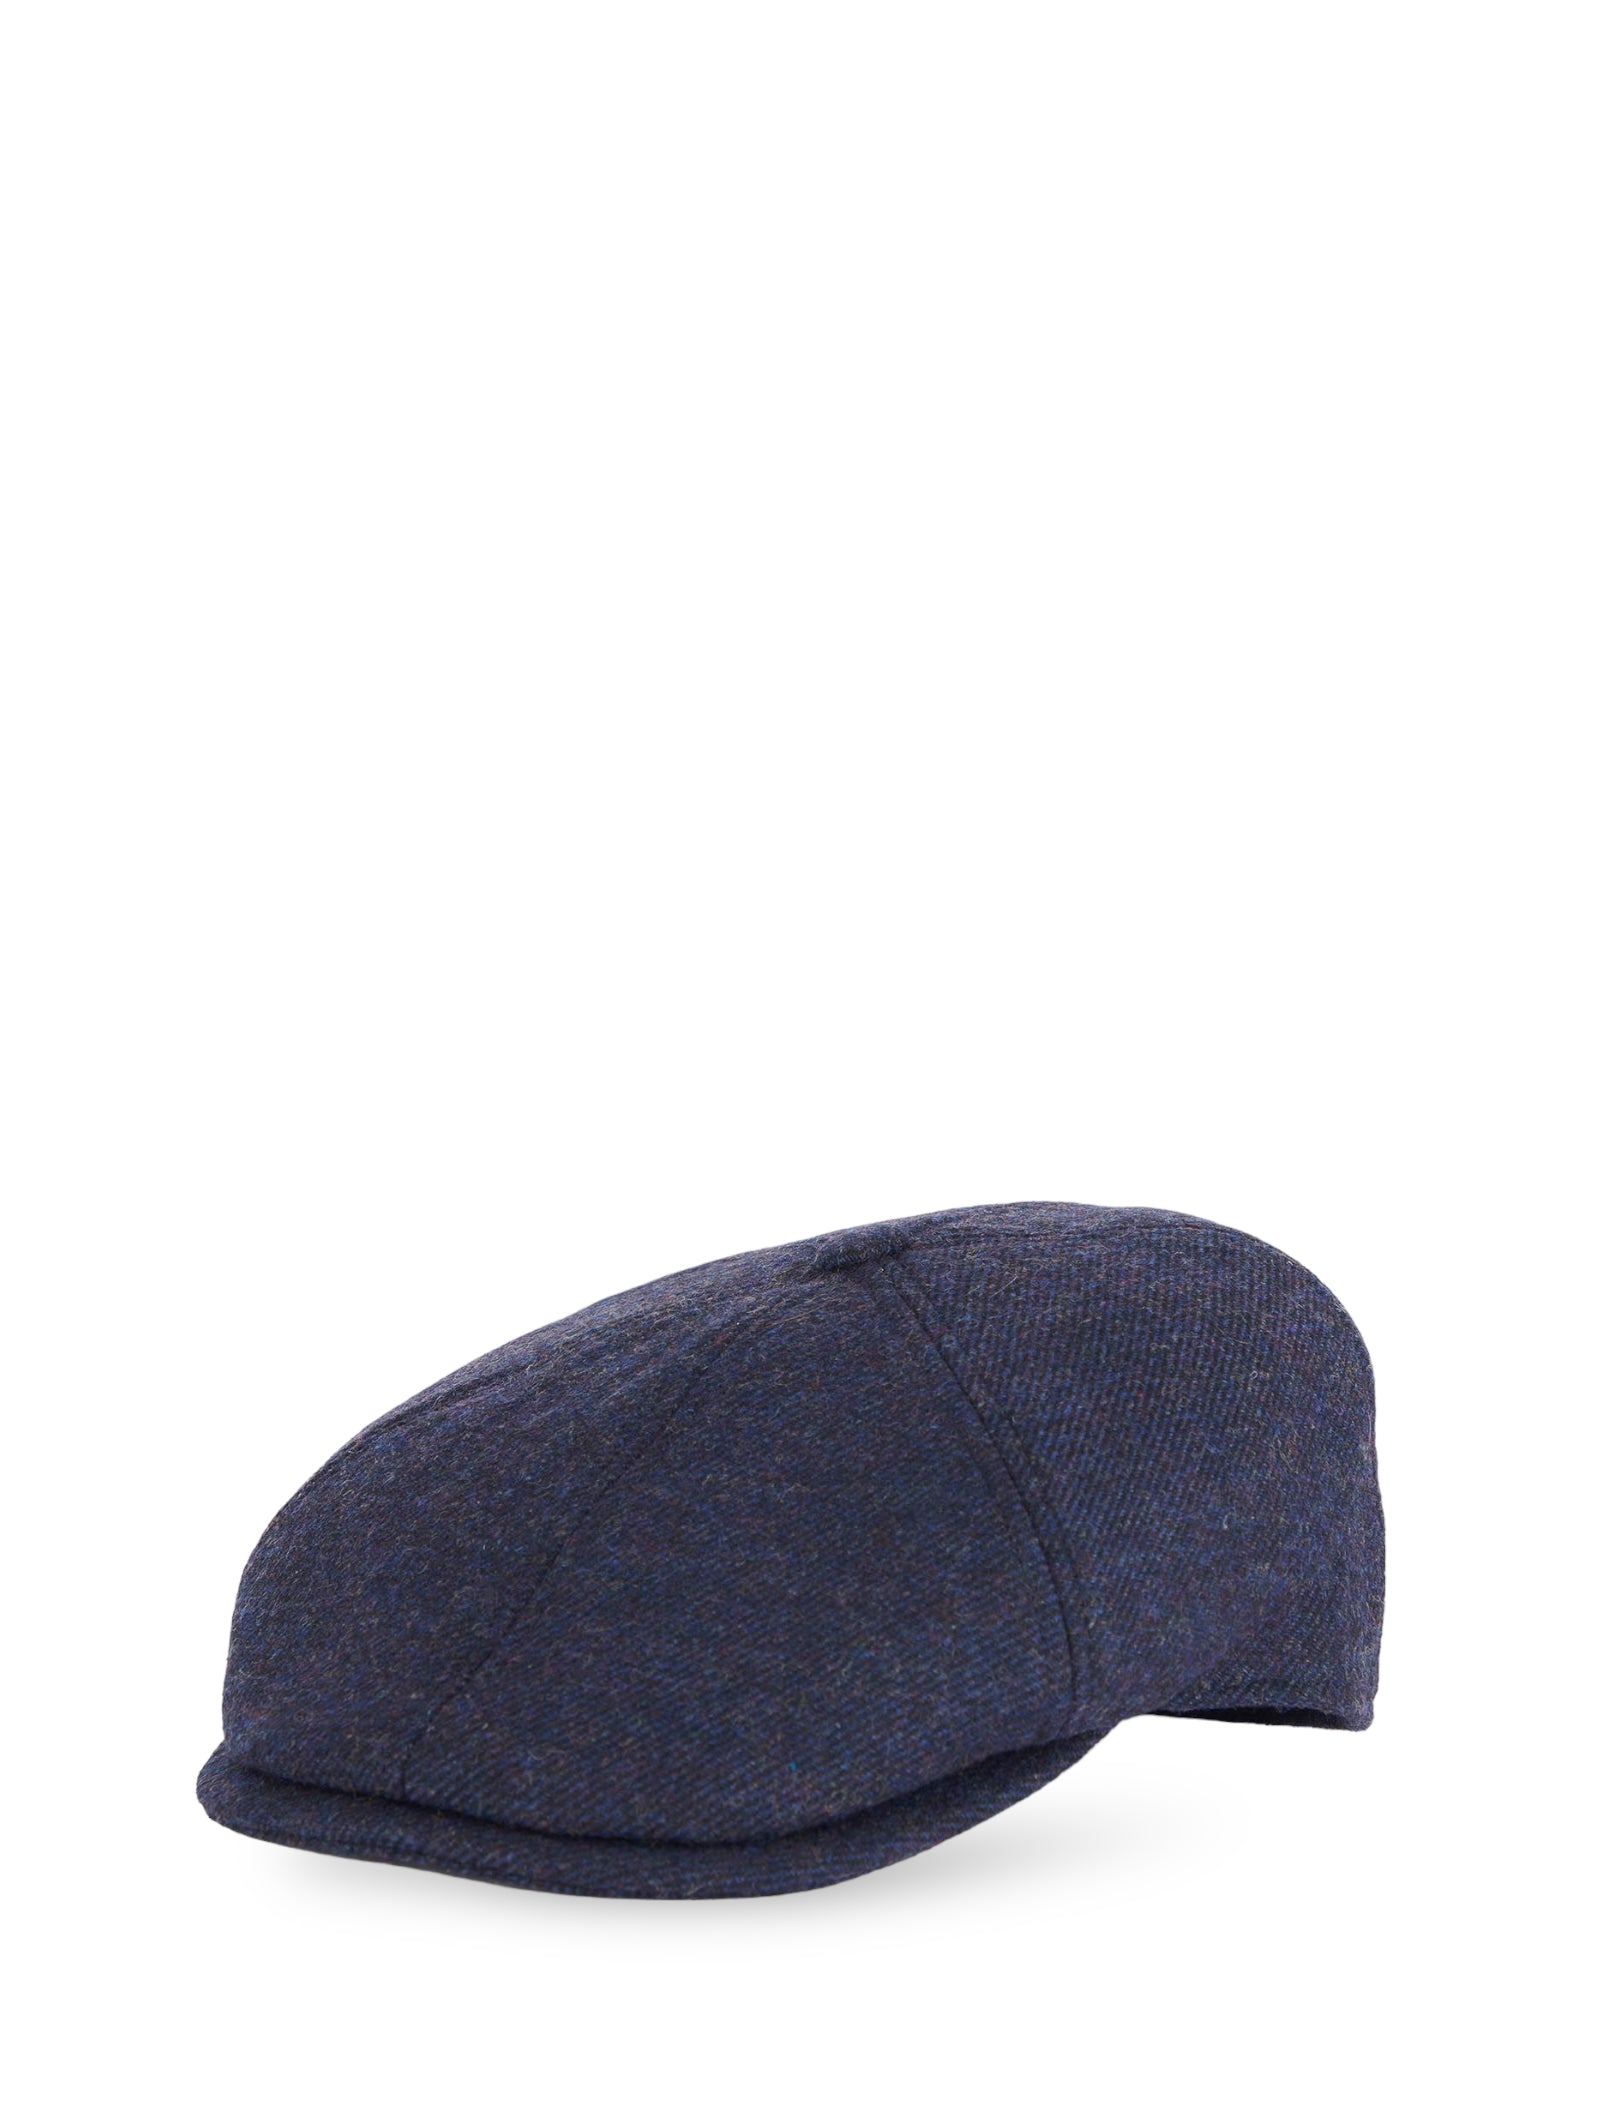 Barbour Hat Mha0708 Navy